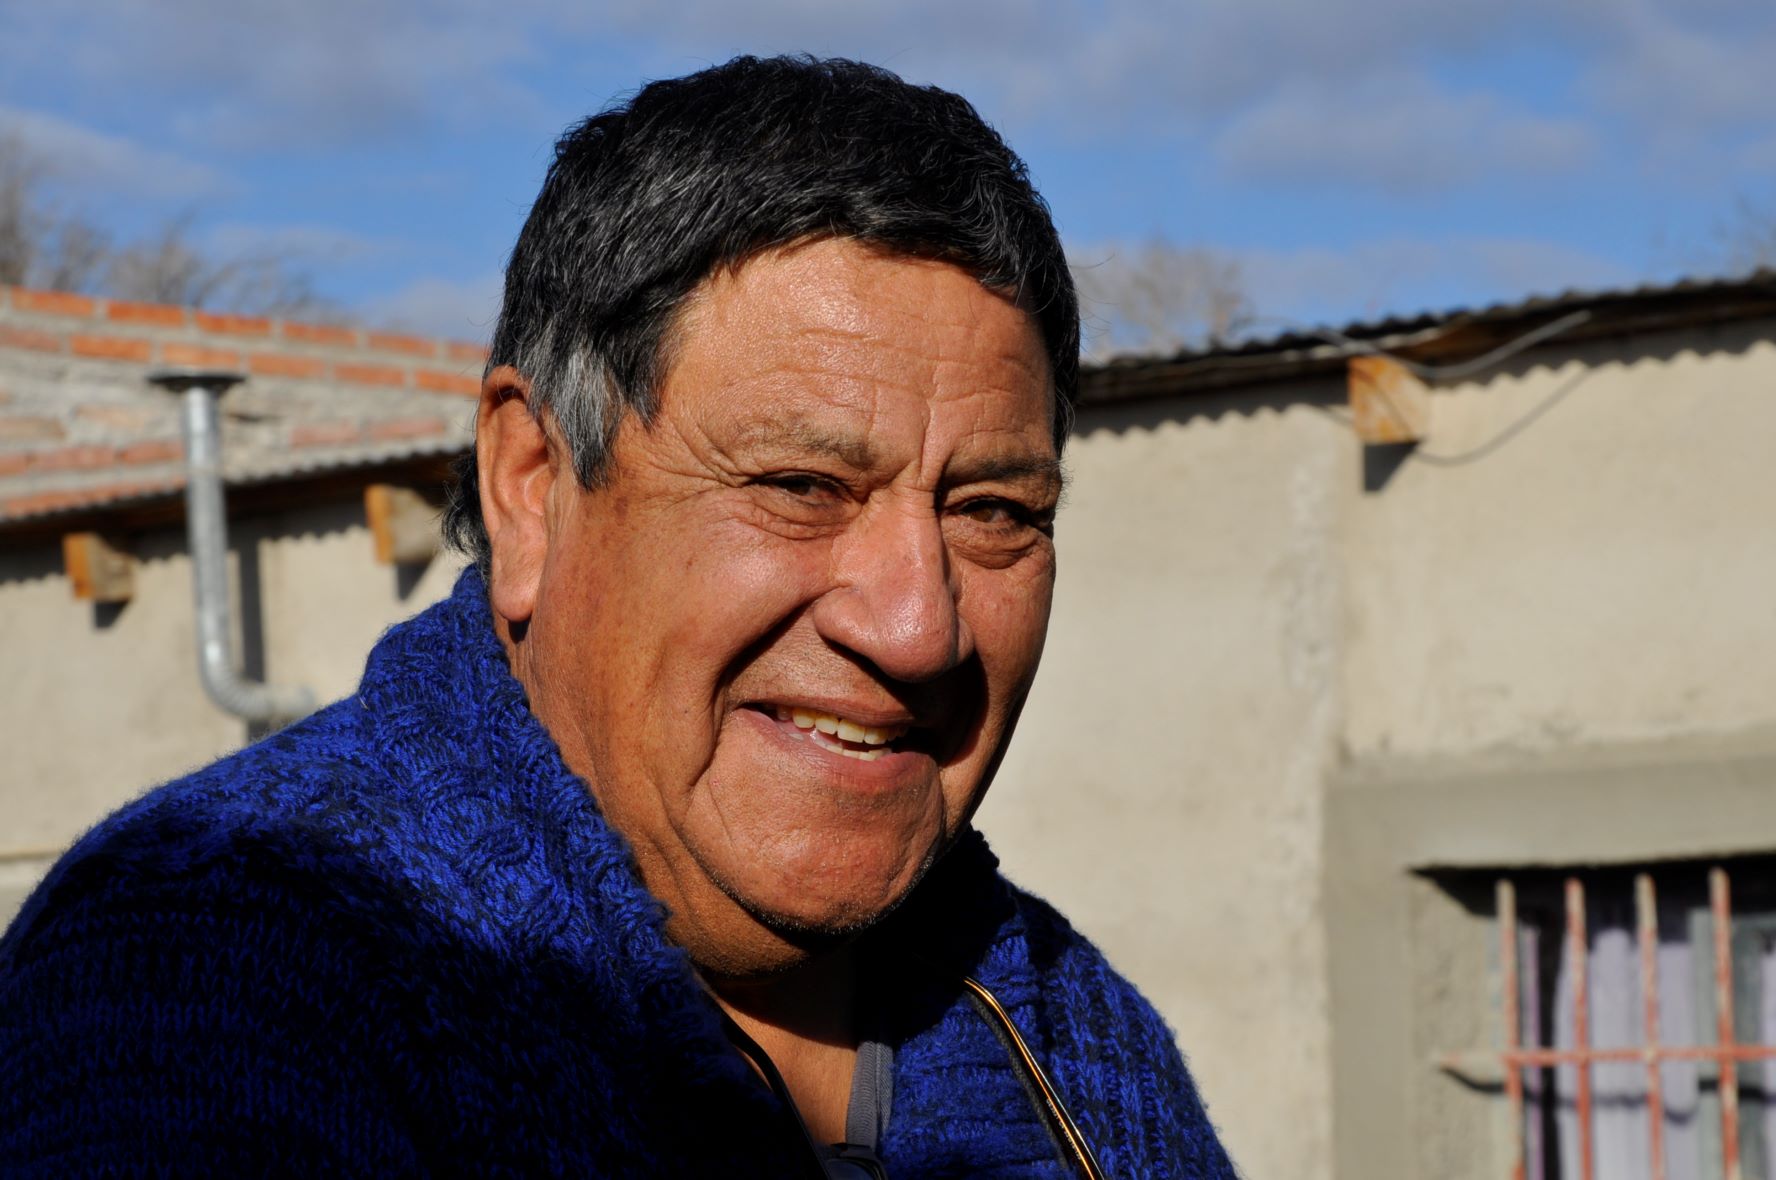 Sabino Morales, hoy a los 73 años, disfruta de la vida en el campo y se alegra por los adelantos que tiene Clemente Onelli. Foto: José Mellado.